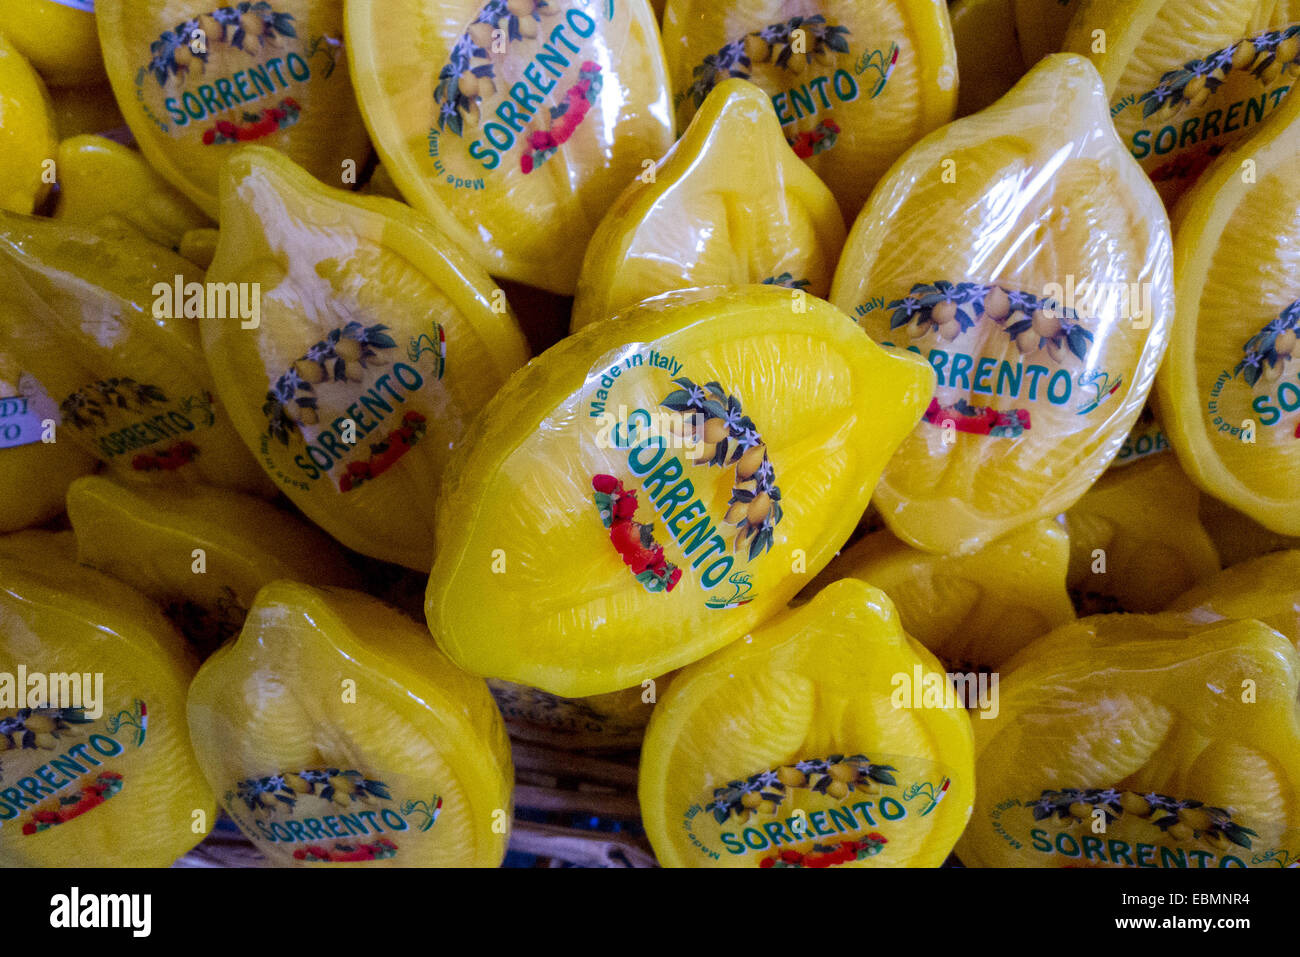 Savon en forme de citron à vendre à Sorrento, Italie Photo Stock - Alamy